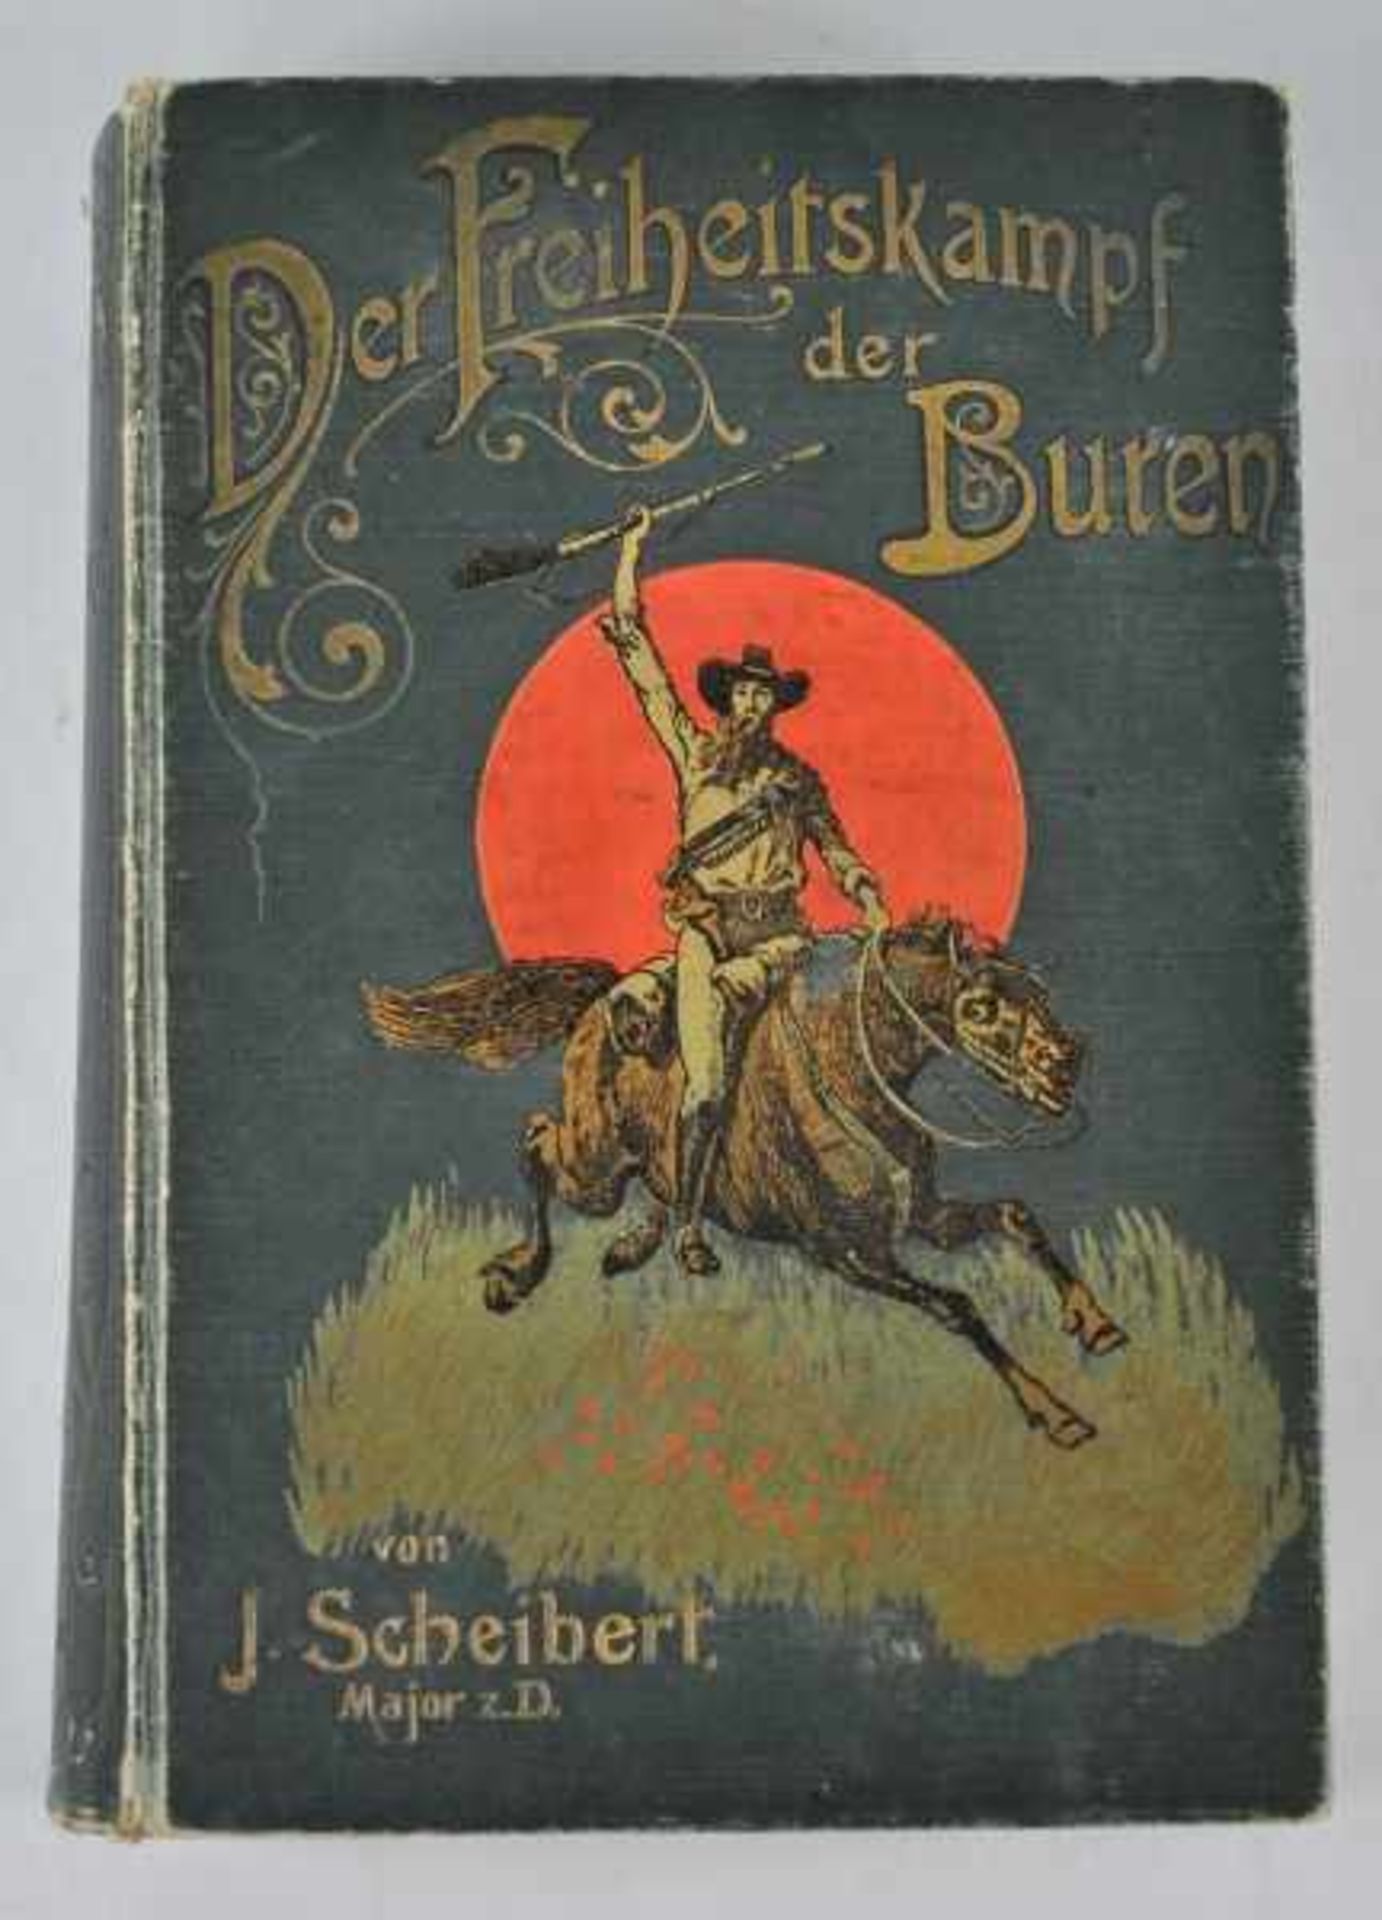 BUREN Scheibert, J.: "Der Freiheitskampf der Buren und die Geschichte ihres Landes", zwei Bände in